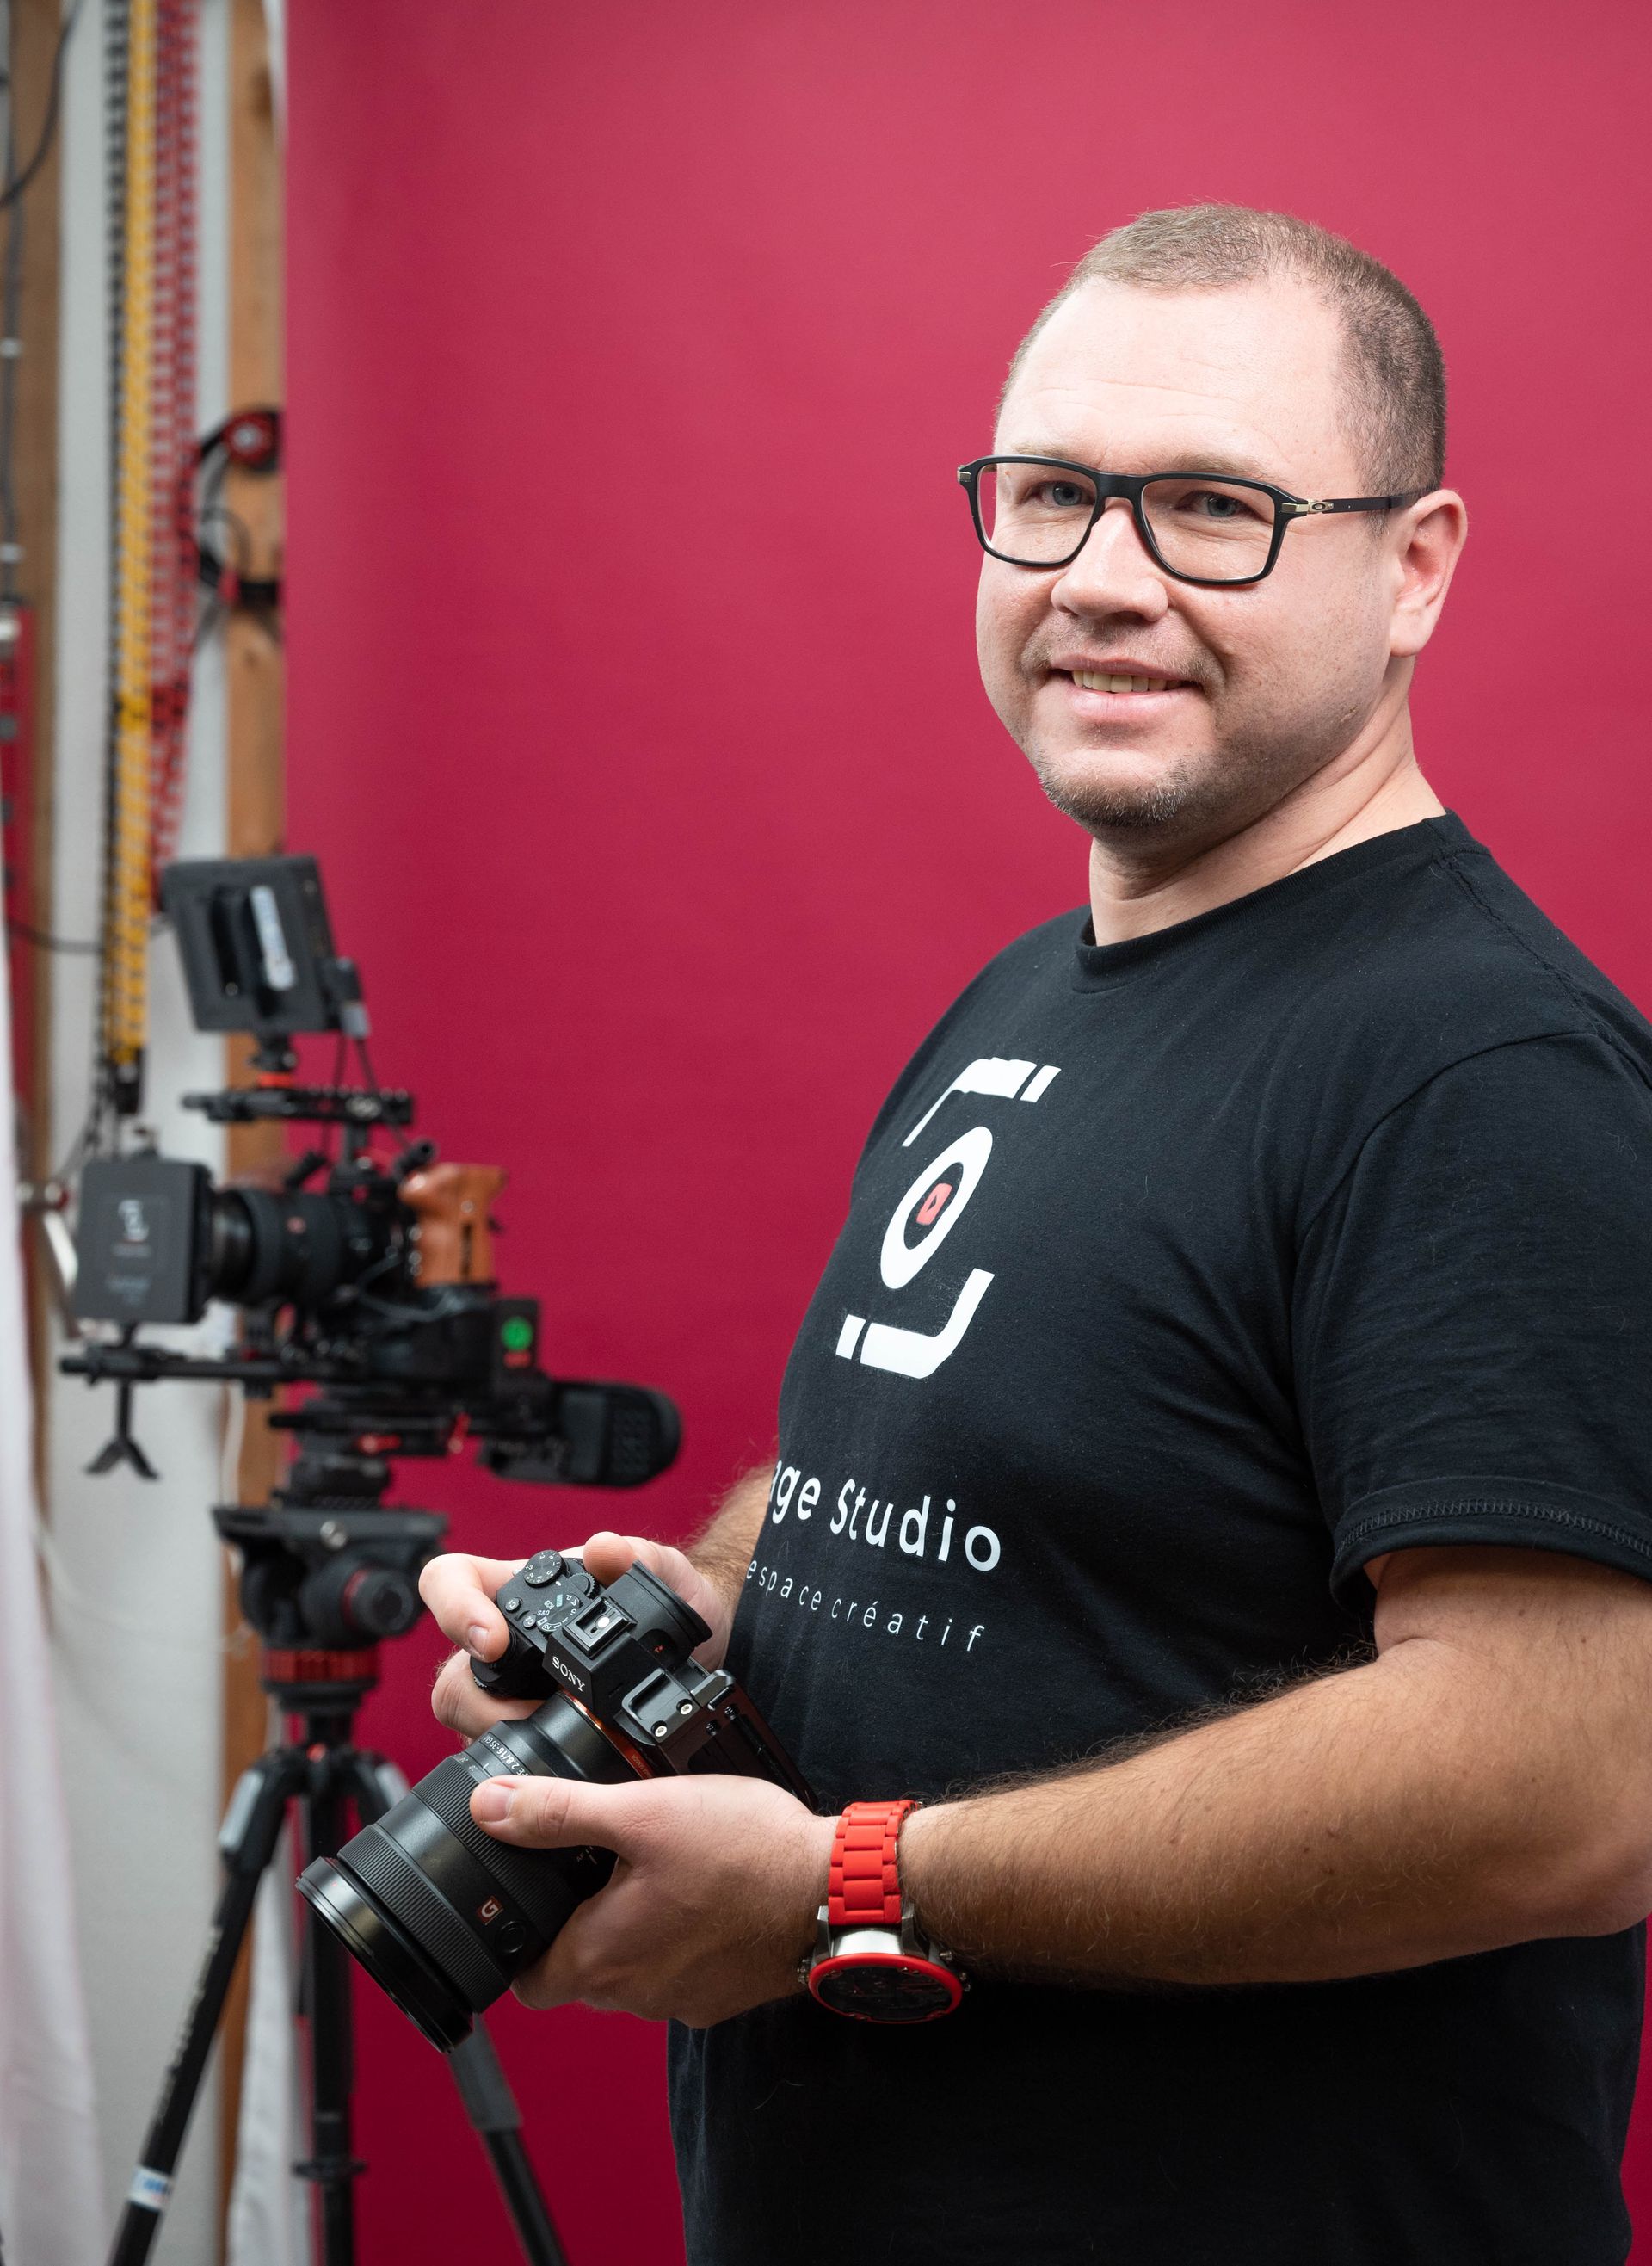 Un homme portant des lunettes tient un appareil photo devant un fond rouge.